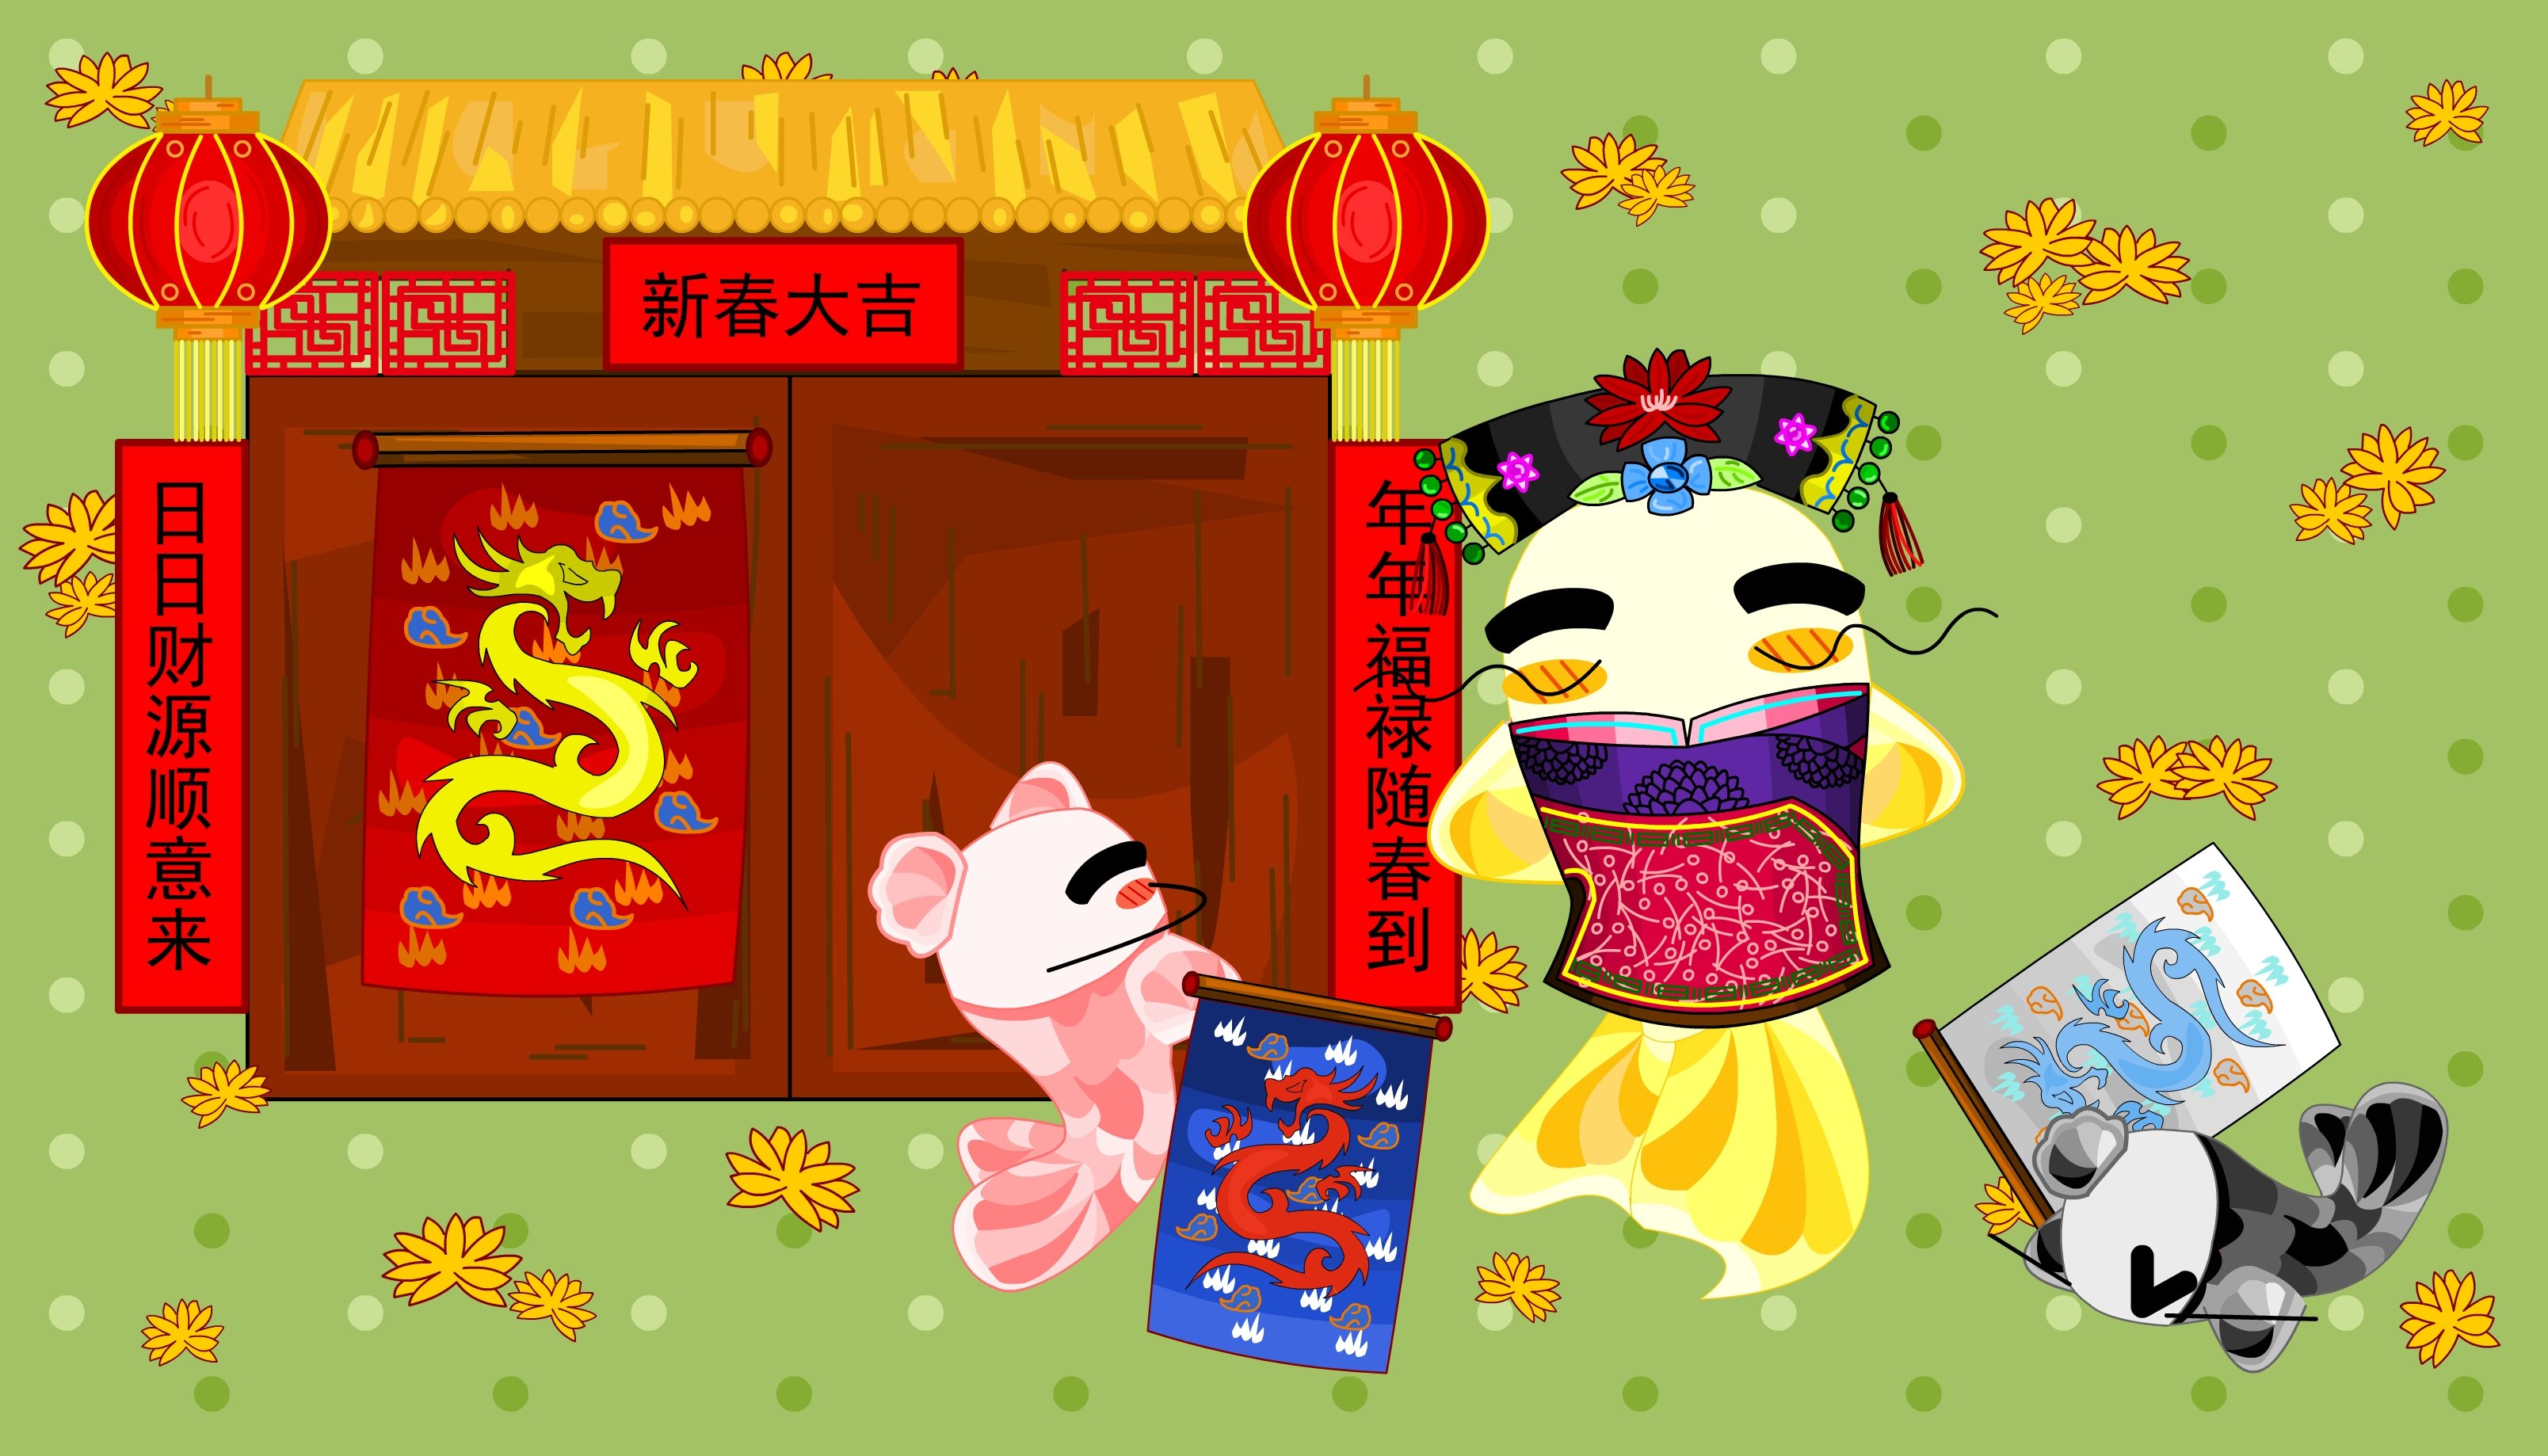 中国少数民族春节习俗——满族挂旗